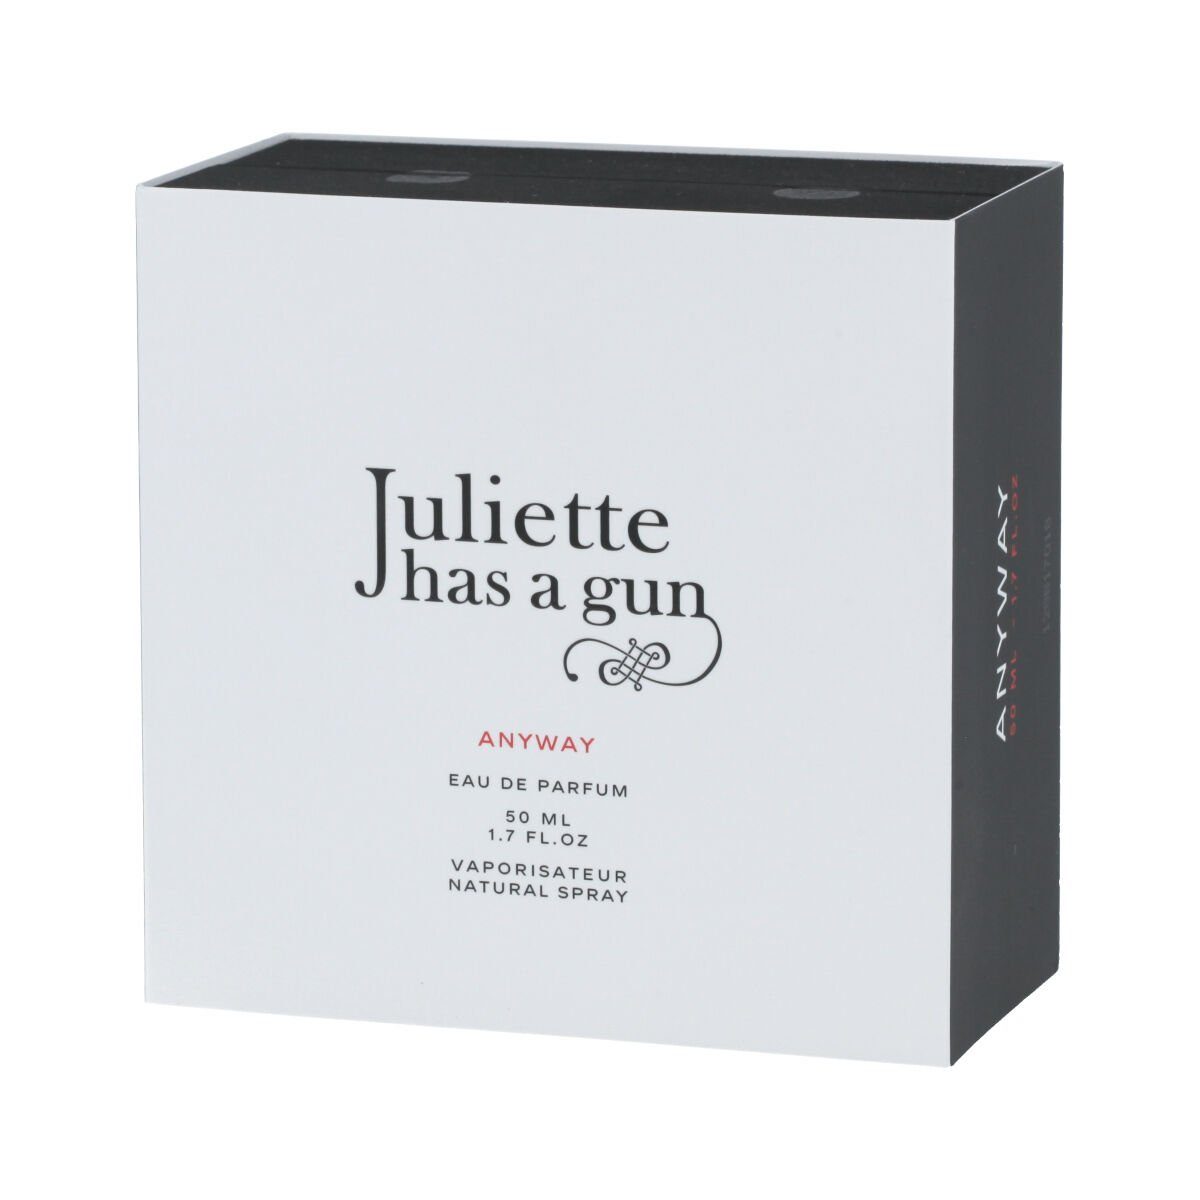 ml de Anyway Gun Parfum Gun Juliette Eau has a Eau 50 Toilette Has Juliette de Unisex-Parfüm A